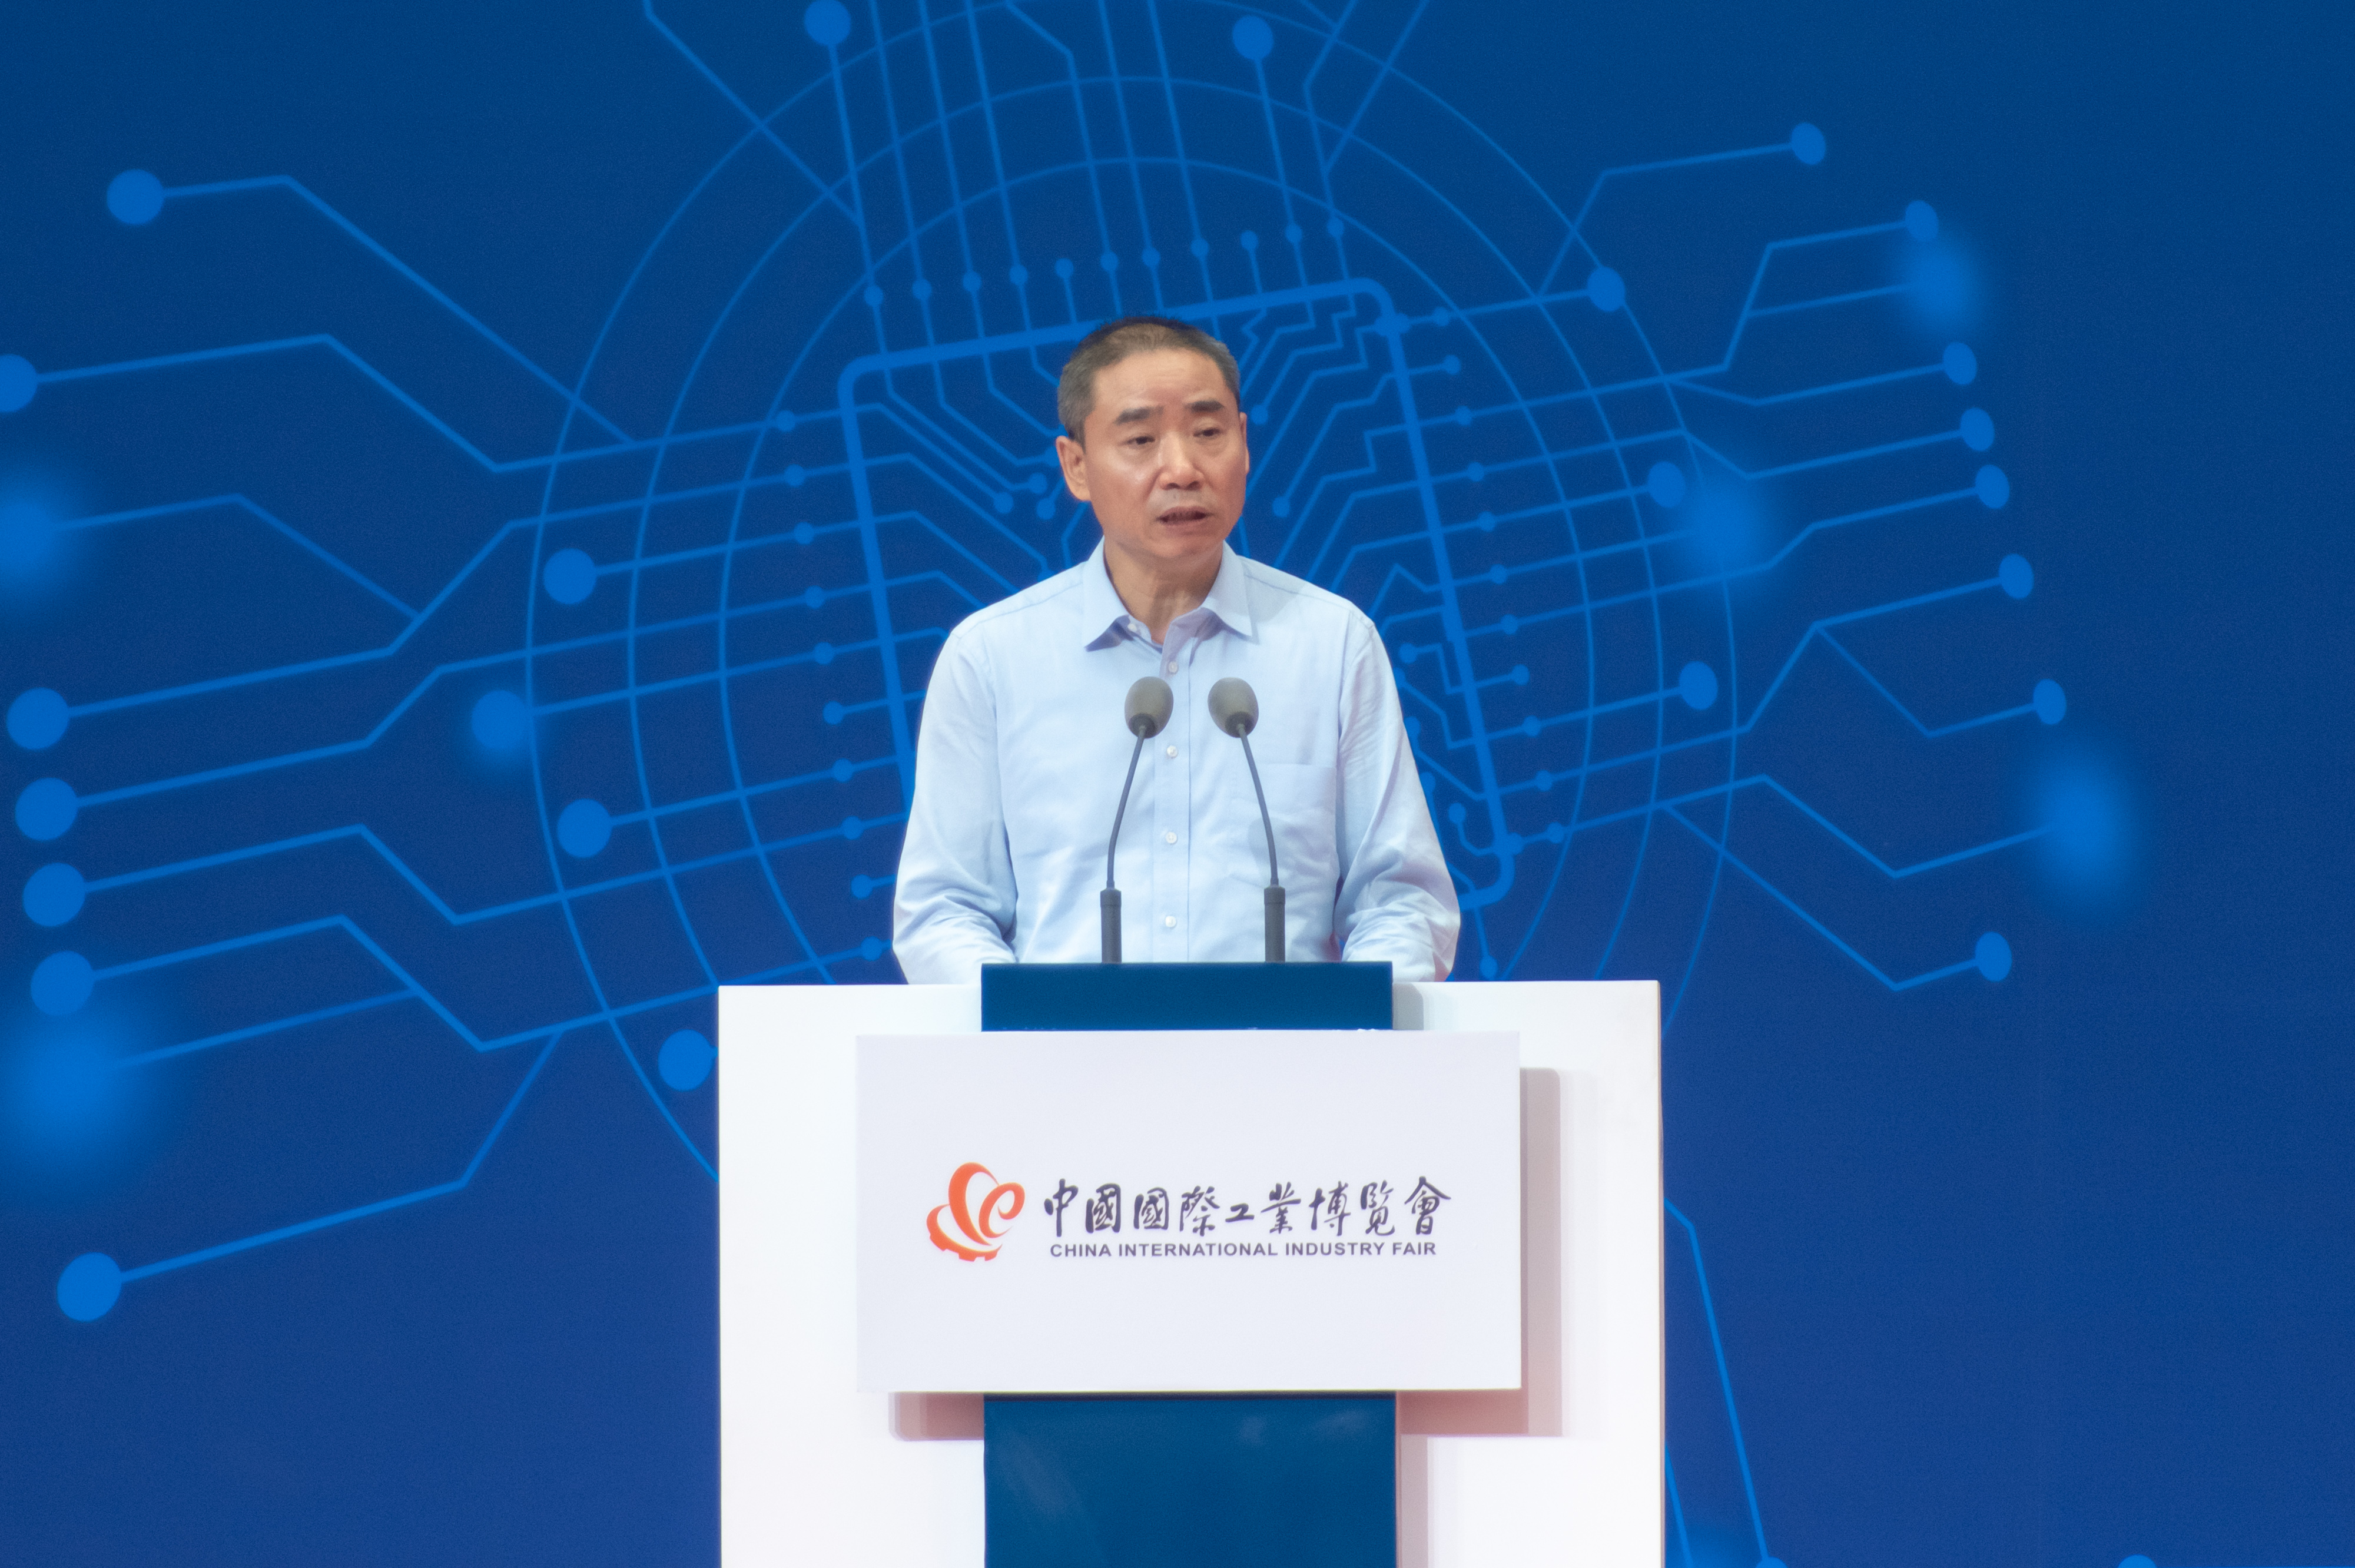 辛国斌出席第二十二届中国国际工业博览会开幕式并致辞